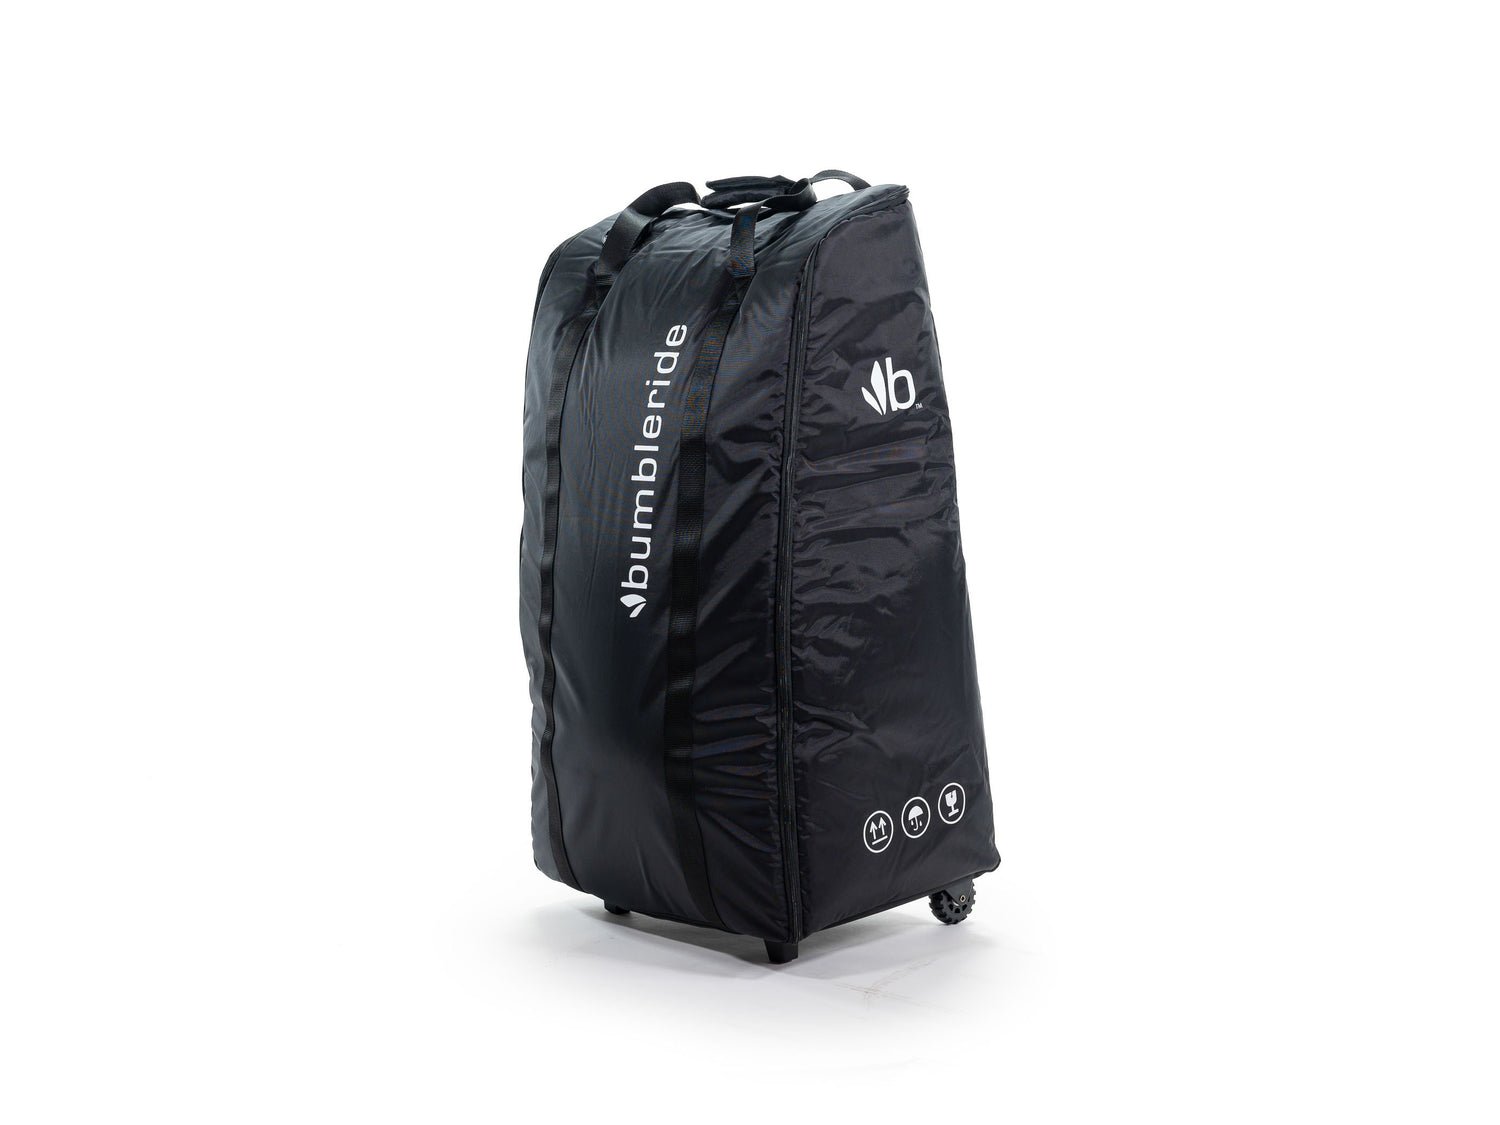 Bumbleride Travel Bag - Era / Indie / Speed Strollers - ANB Baby -8500531310026$100 - $300